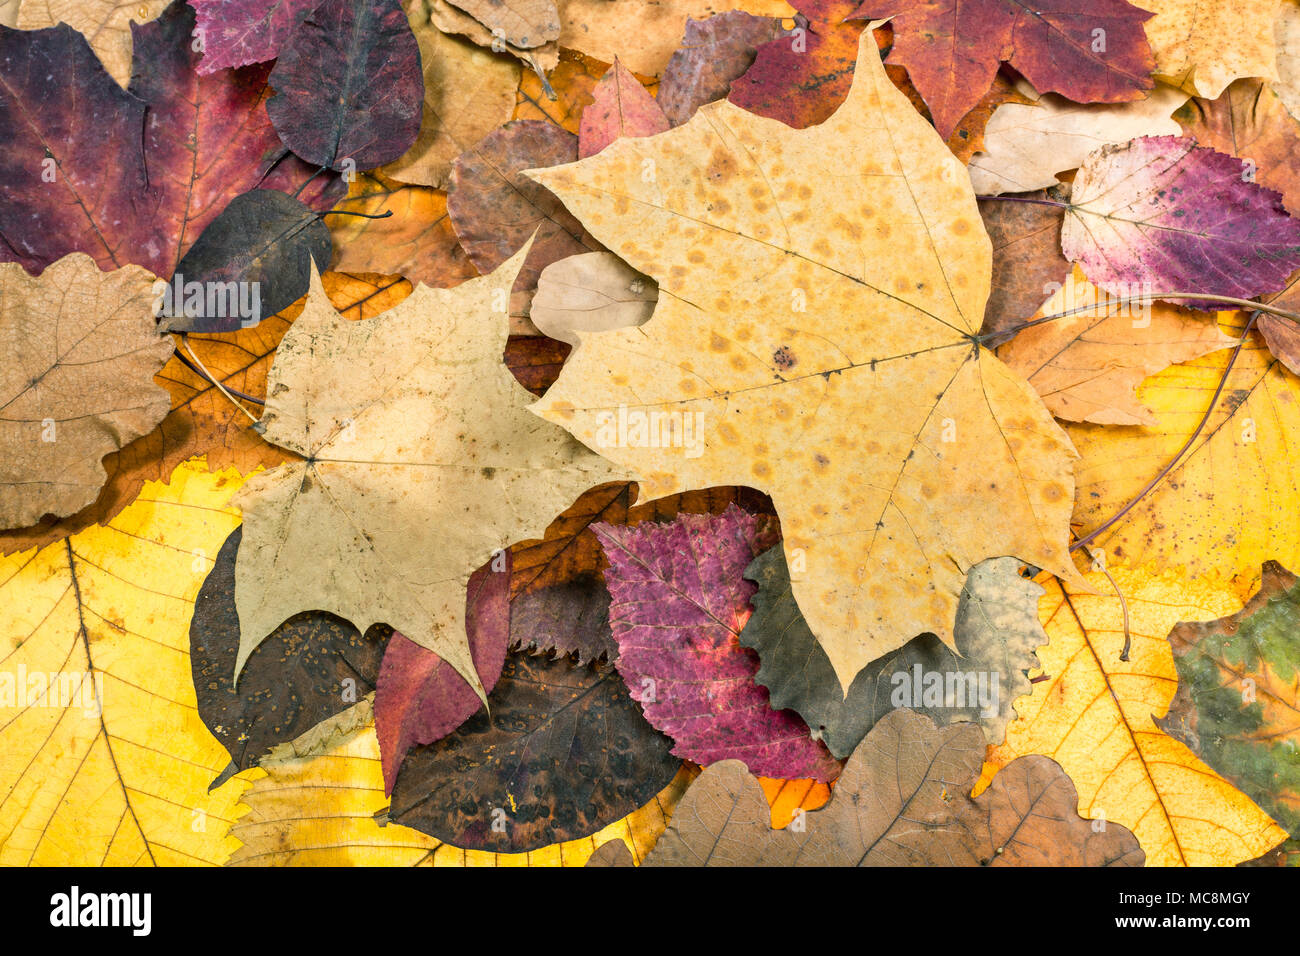 Natürliche Herbst Hintergrund von Cognac abgefallene Blätter von Eichen, Ahorn, Erle, malus Bäume Stockfoto